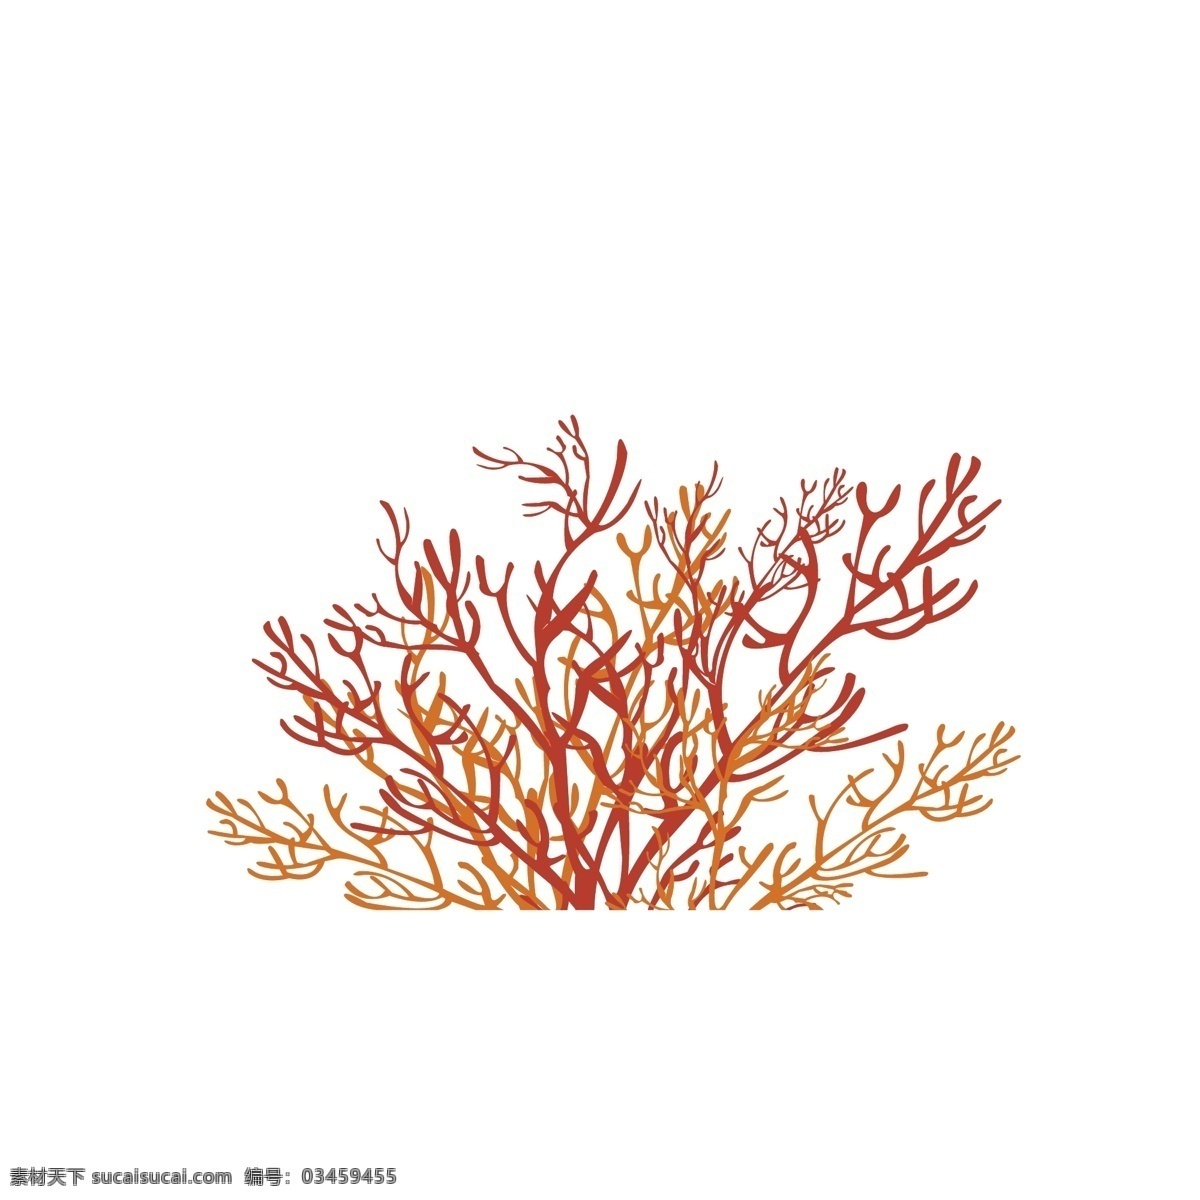 珊瑚图片 红色珊瑚 海藻 海底生物 红色 海草 生物世界 海洋生物